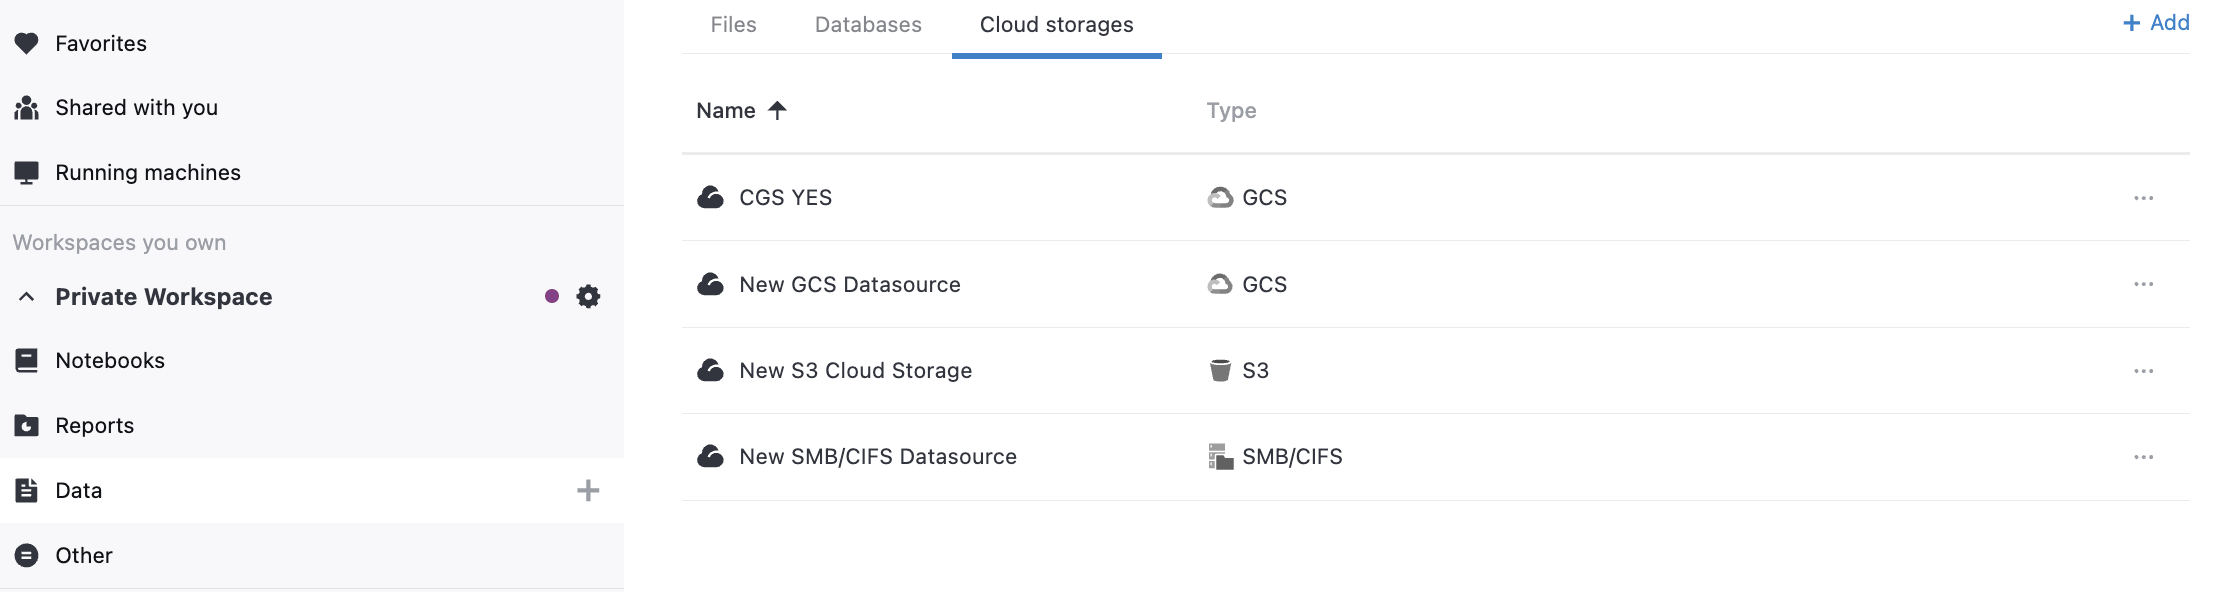 Cloud storages list